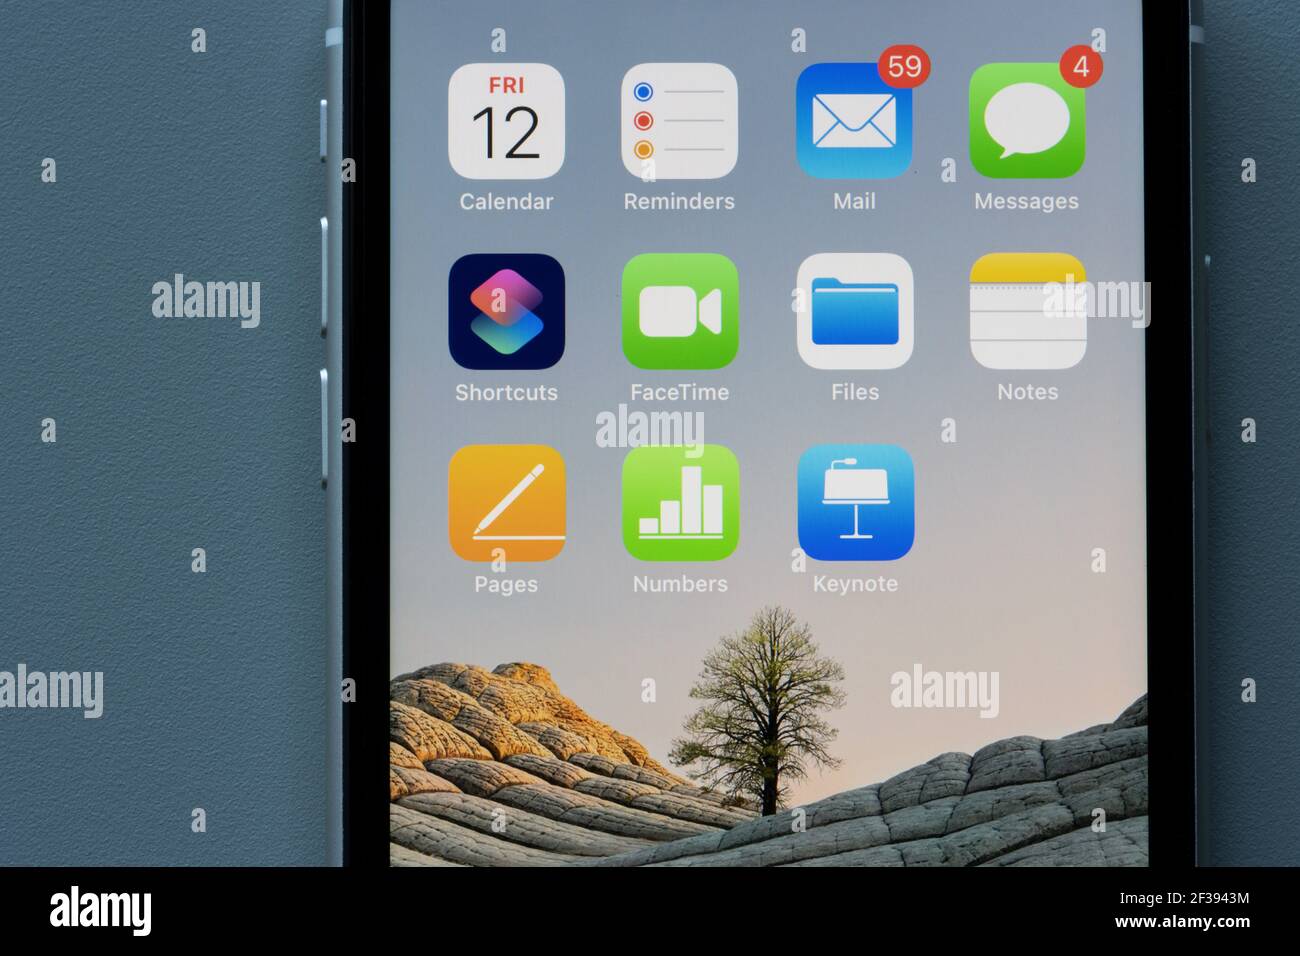 Produktivitäts-Apps von Apple sind auf einem iPhone zu sehen - Kalender, Erinnerungen, Mail, Nachrichten, Verknüpfungen, FaceTime, Dateien, Notizen, Seiten, Zahlen, Keynotes. Stockfoto